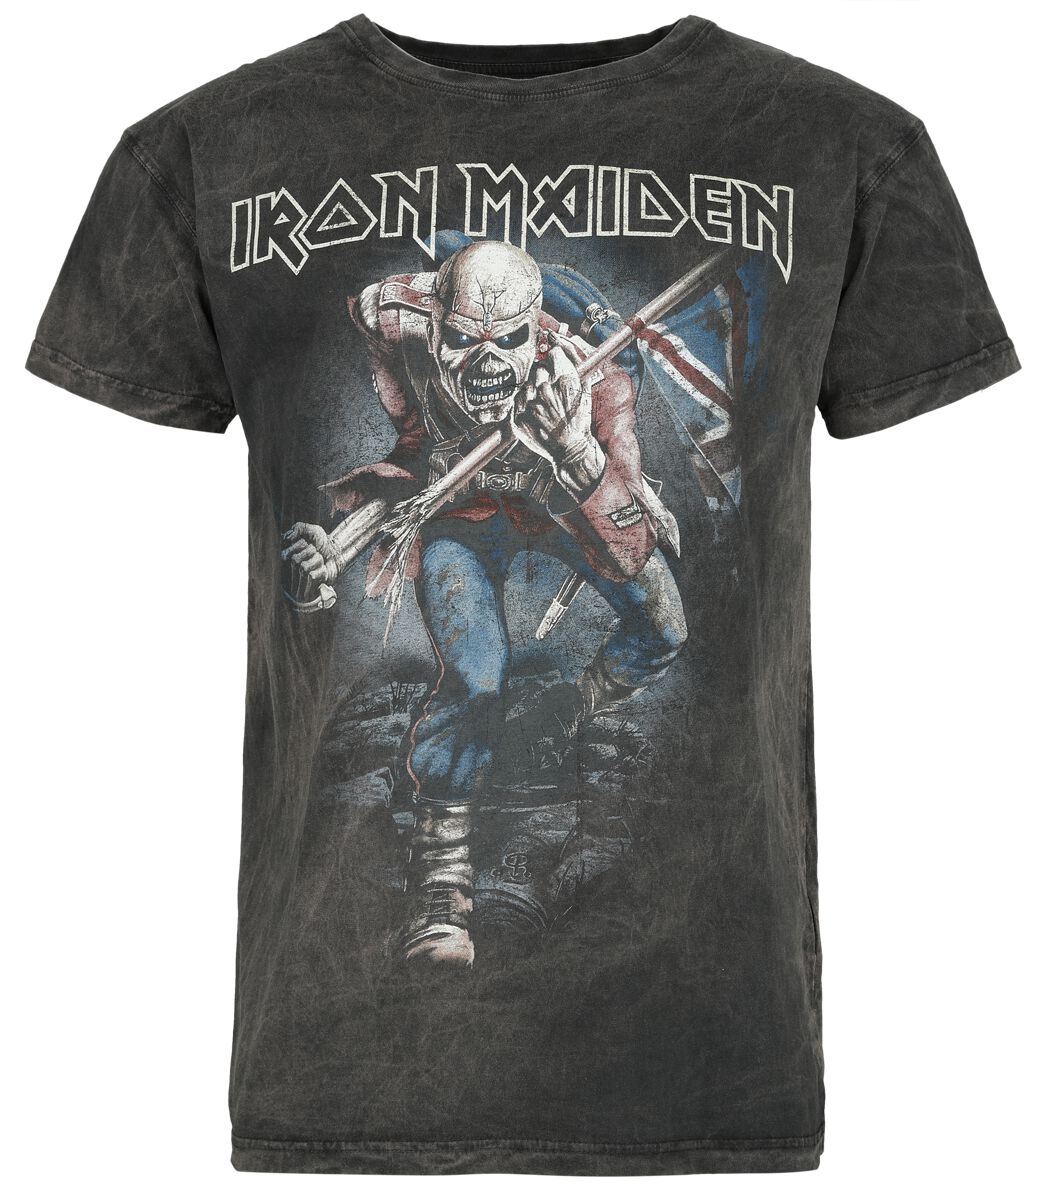 Iron Maiden T-Shirt - The Trooper - S bis 4XL - für Männer - Größe XL - grau  - Lizenziertes Merchandise!